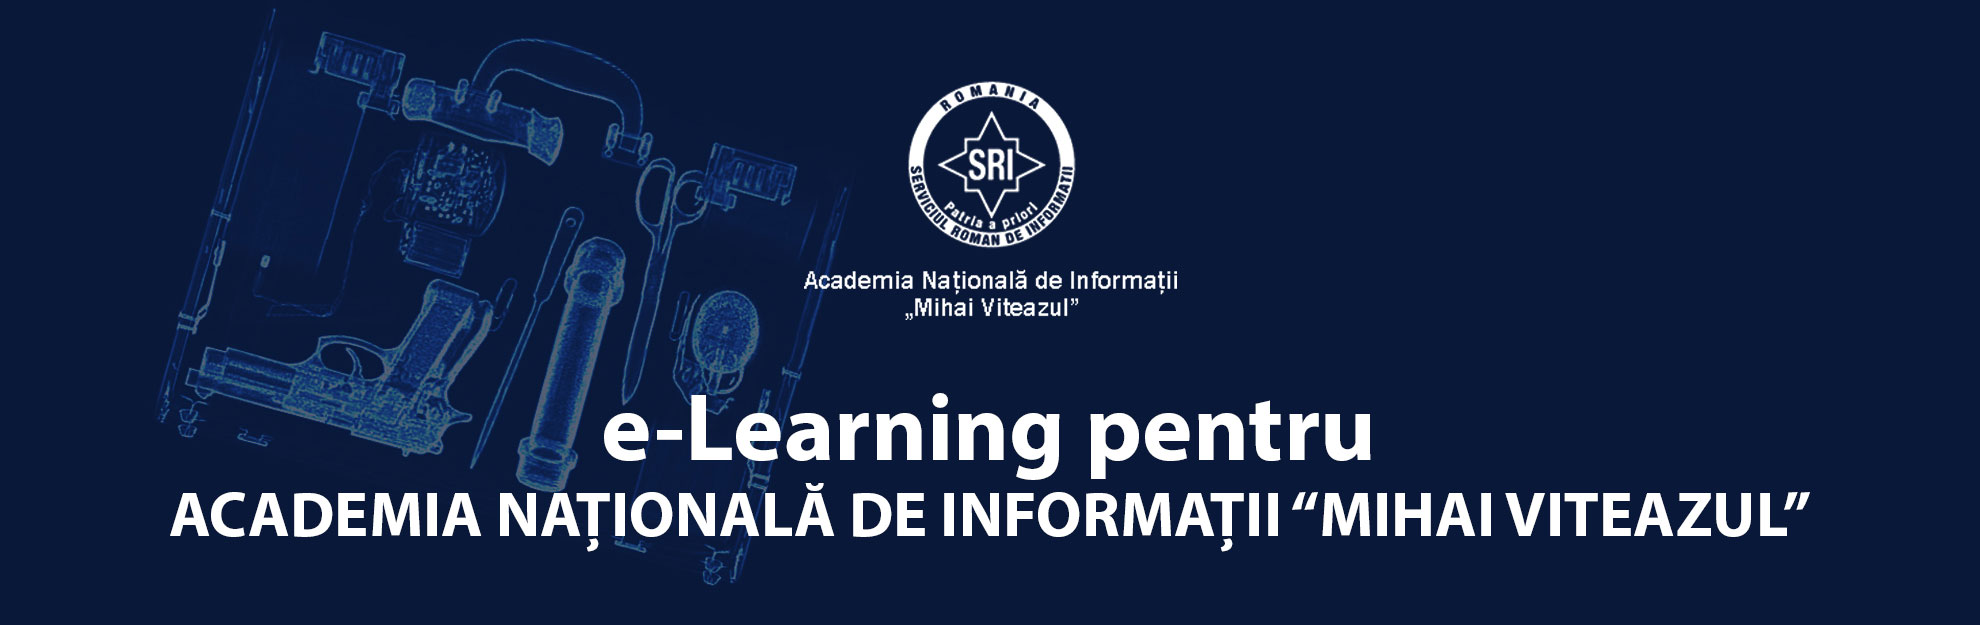 ANIMV - e-Learning pentru Academia Naţională de Informaţii